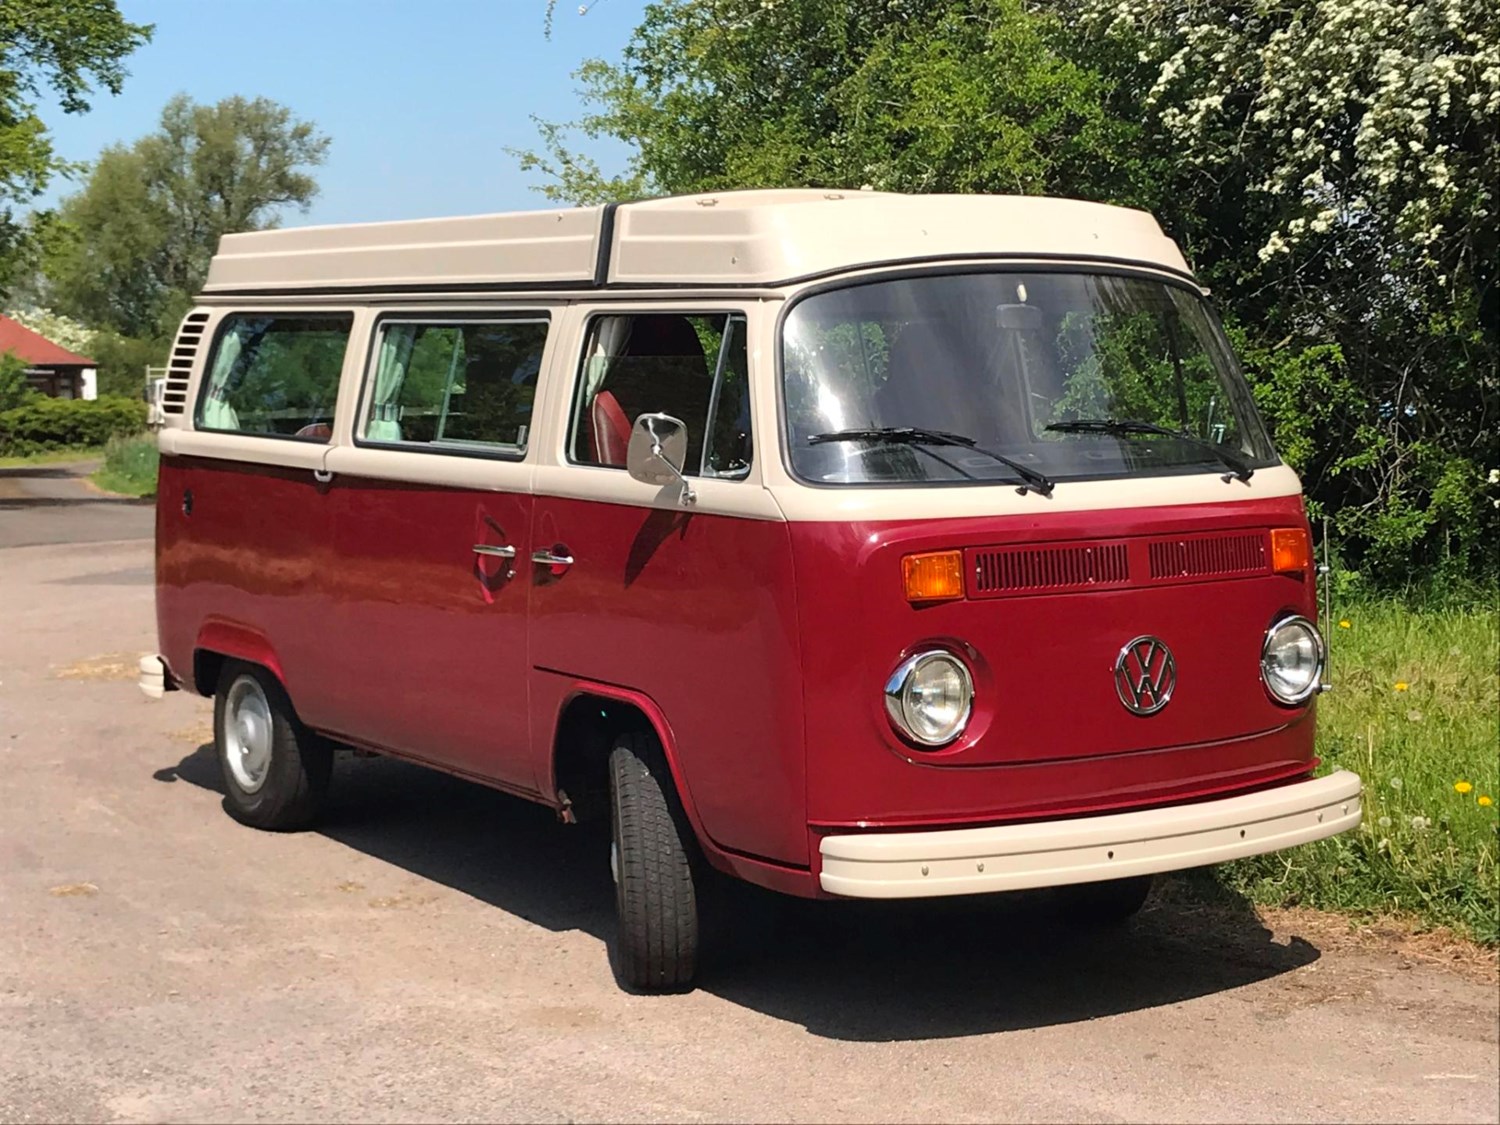 old vw camper van for sale uk